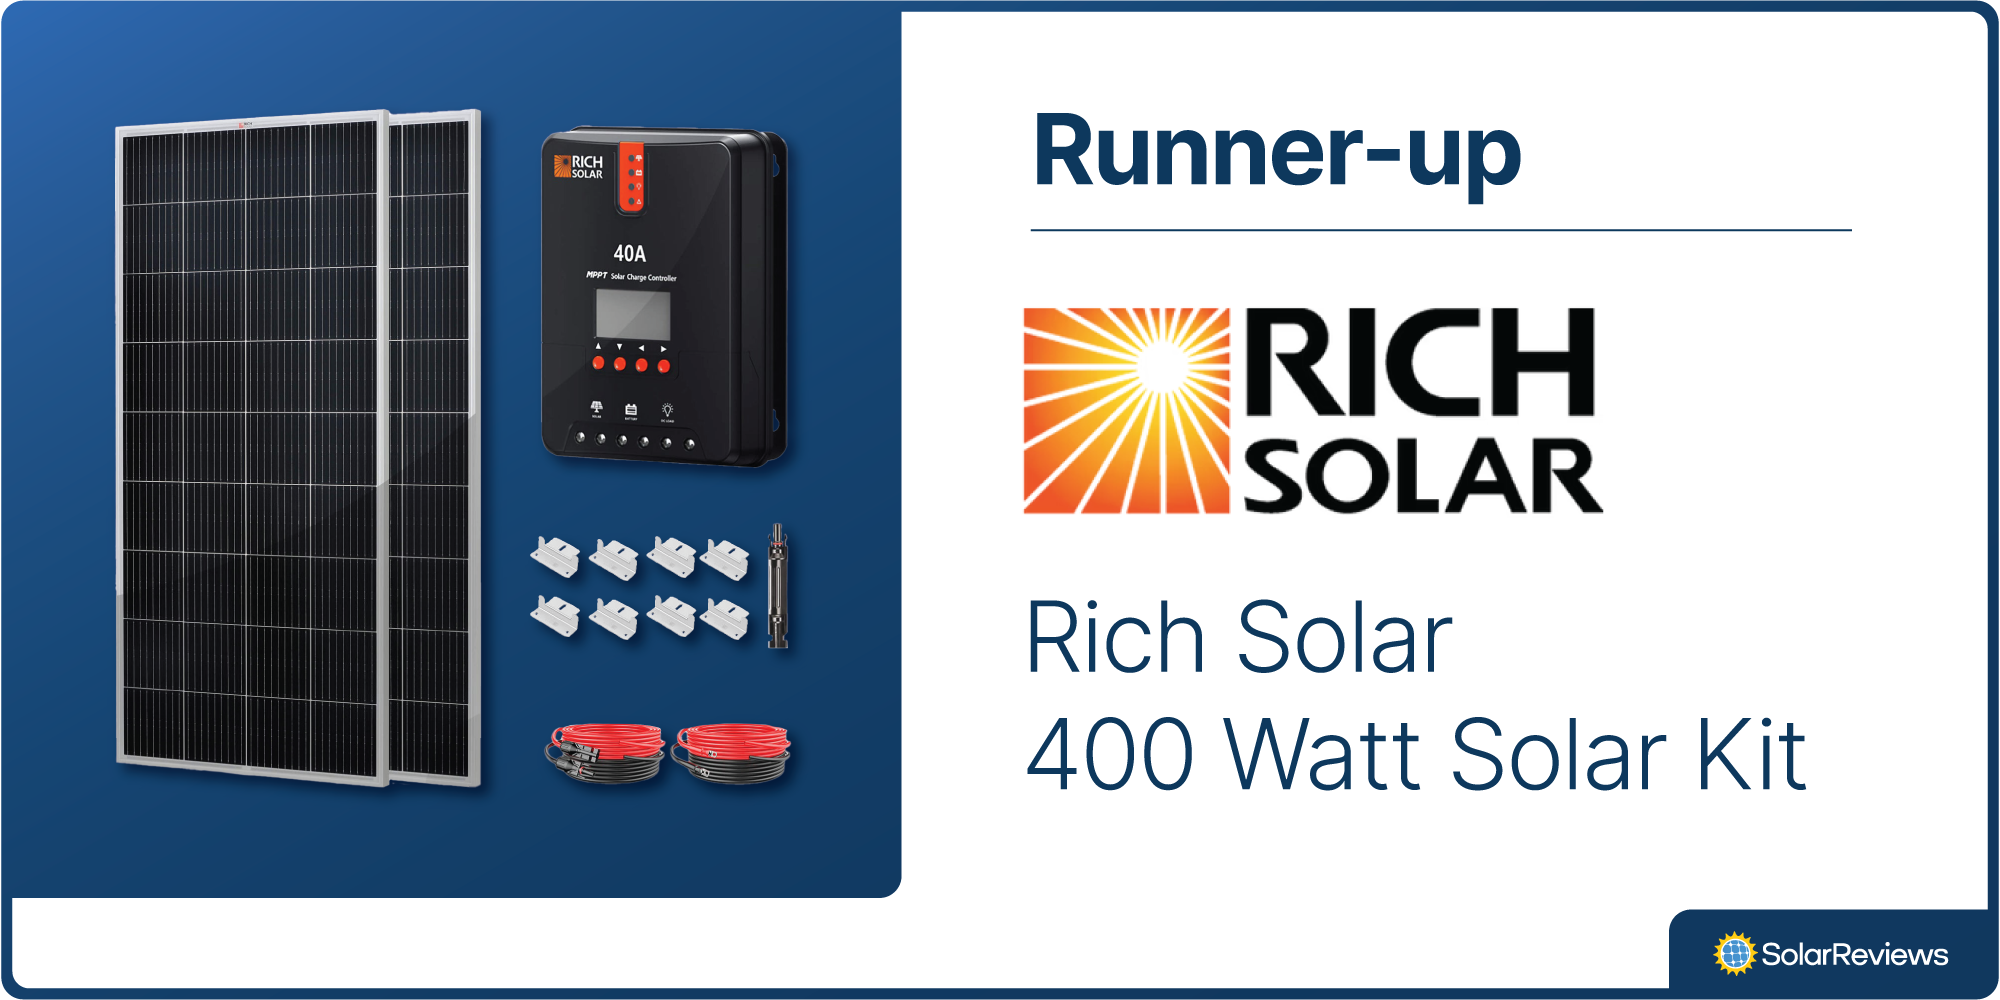 SolarReviews ranks the Rich Solar 400 Watt Solar Kit as the runner-up for best RV solar panel kit